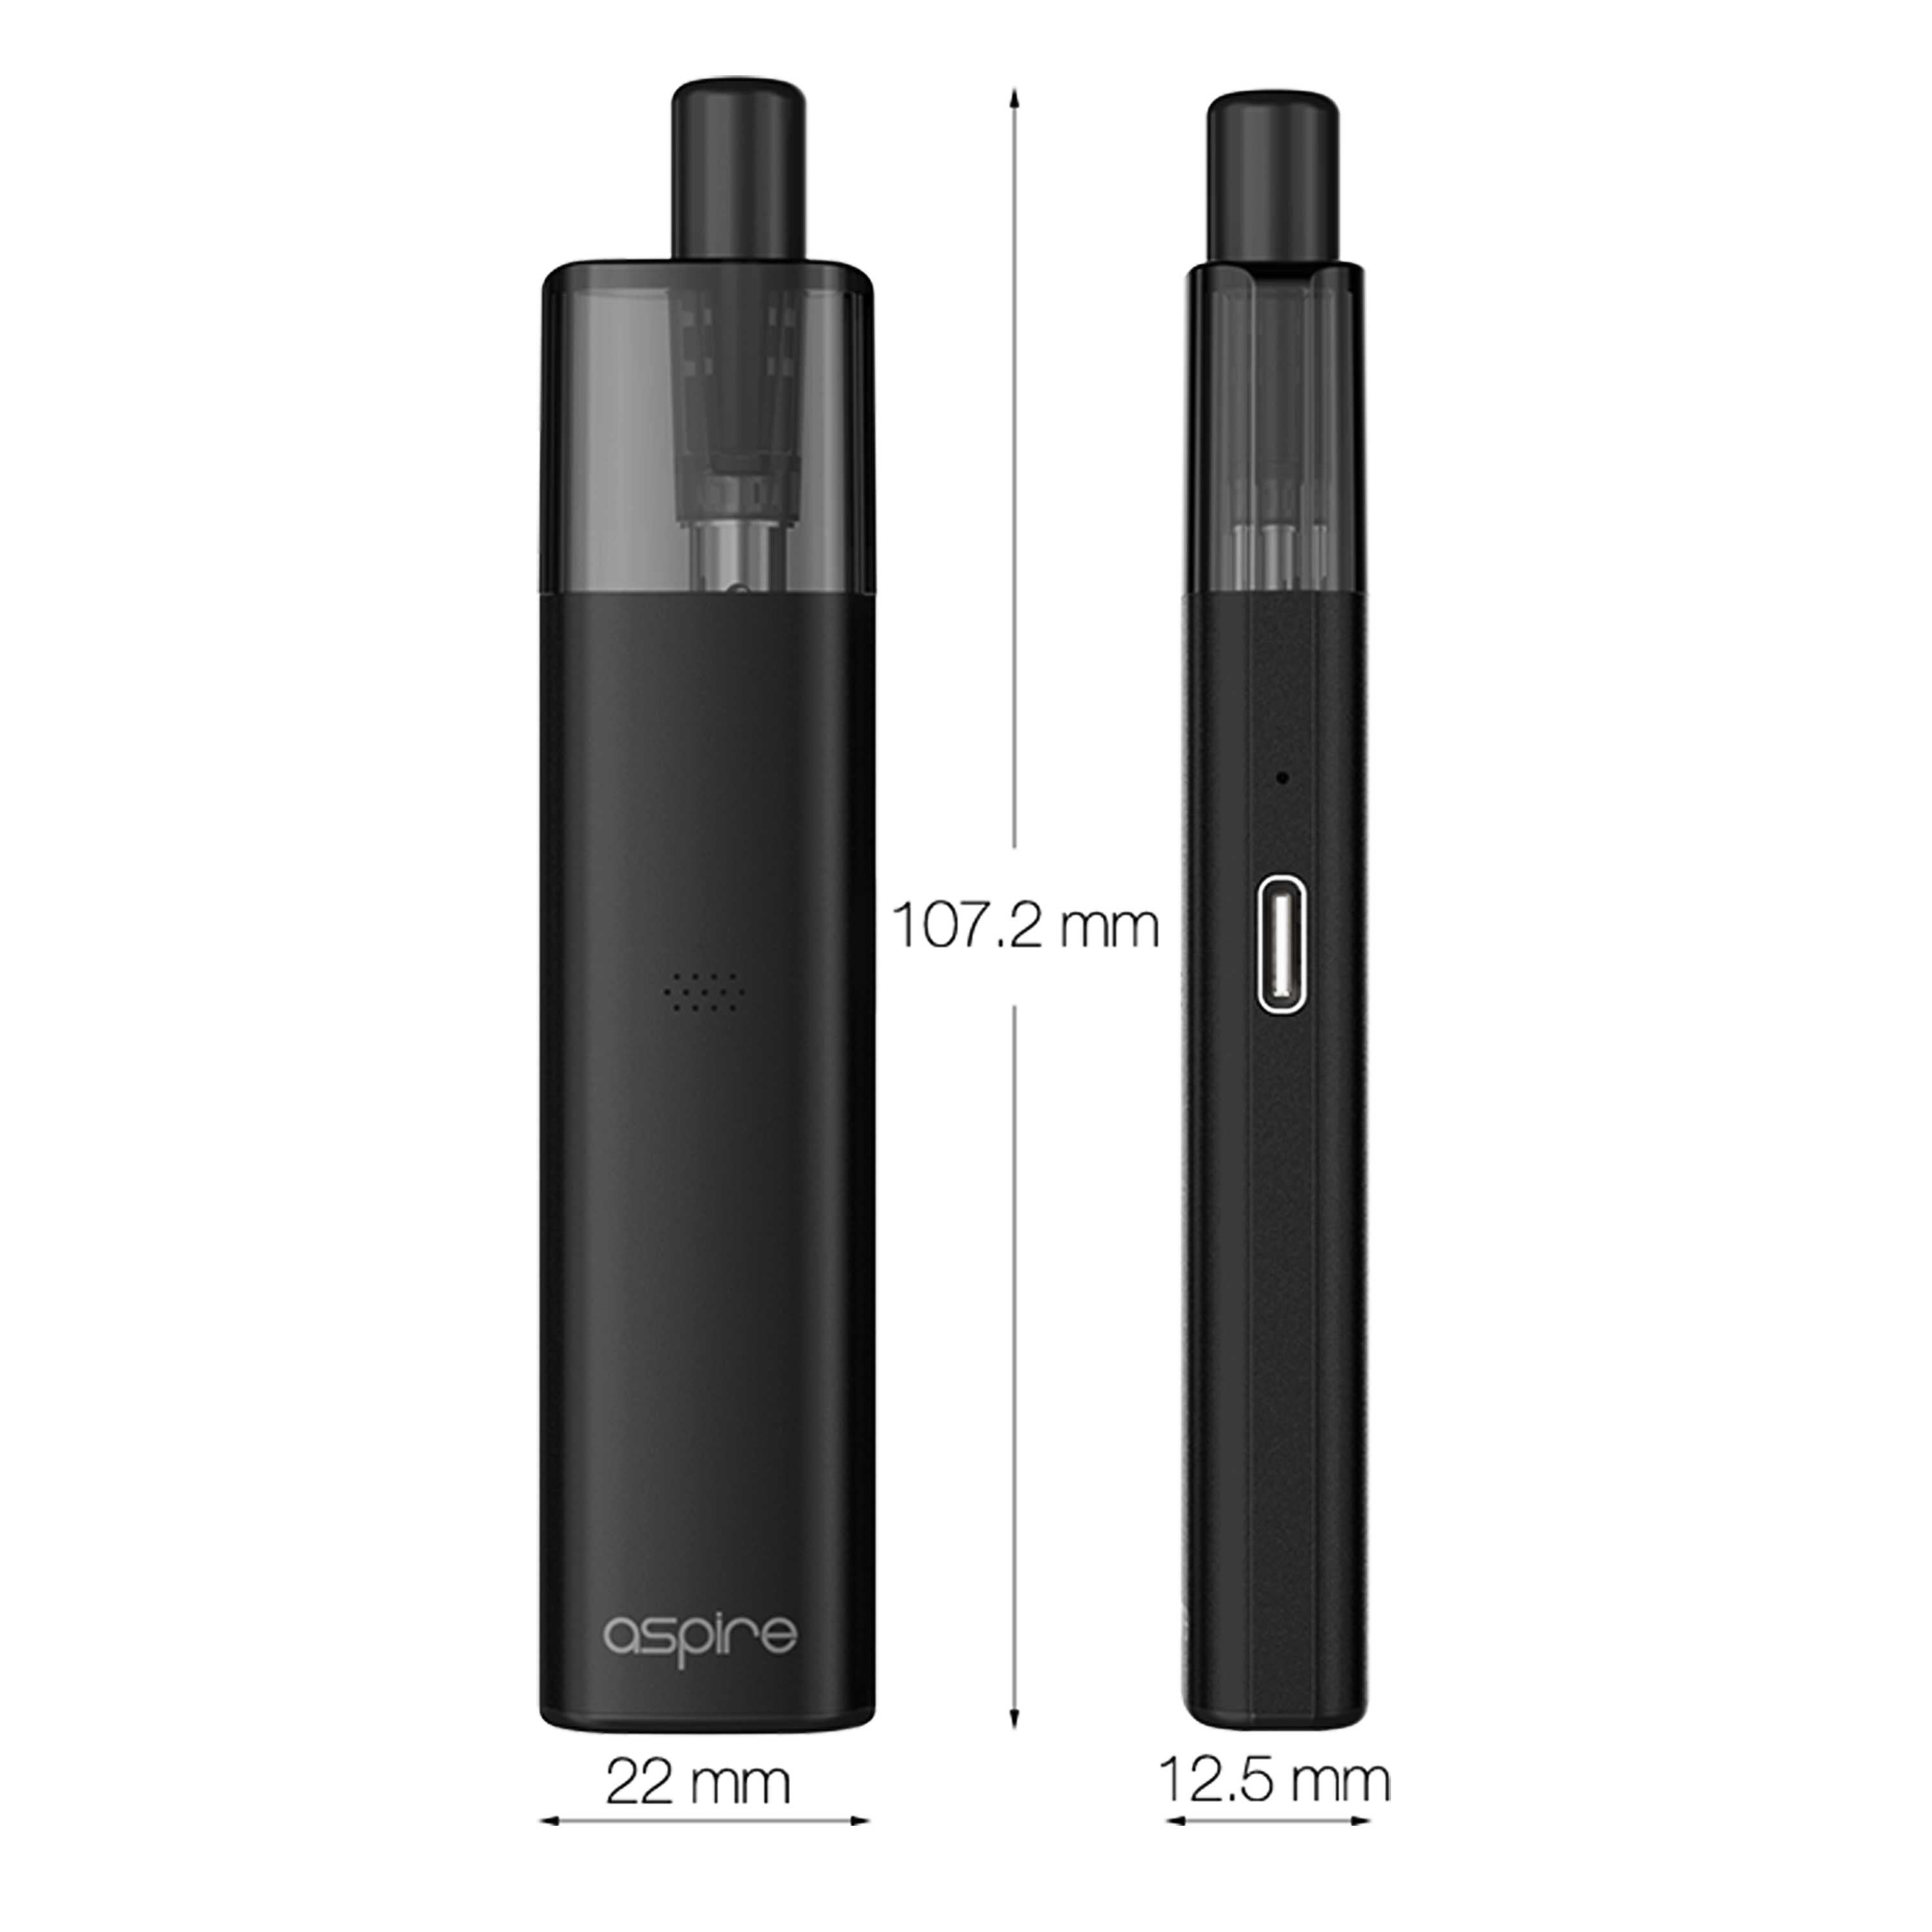 Aspire - Vilter Kit (2 ml) 450 mAh - E-Zigarette